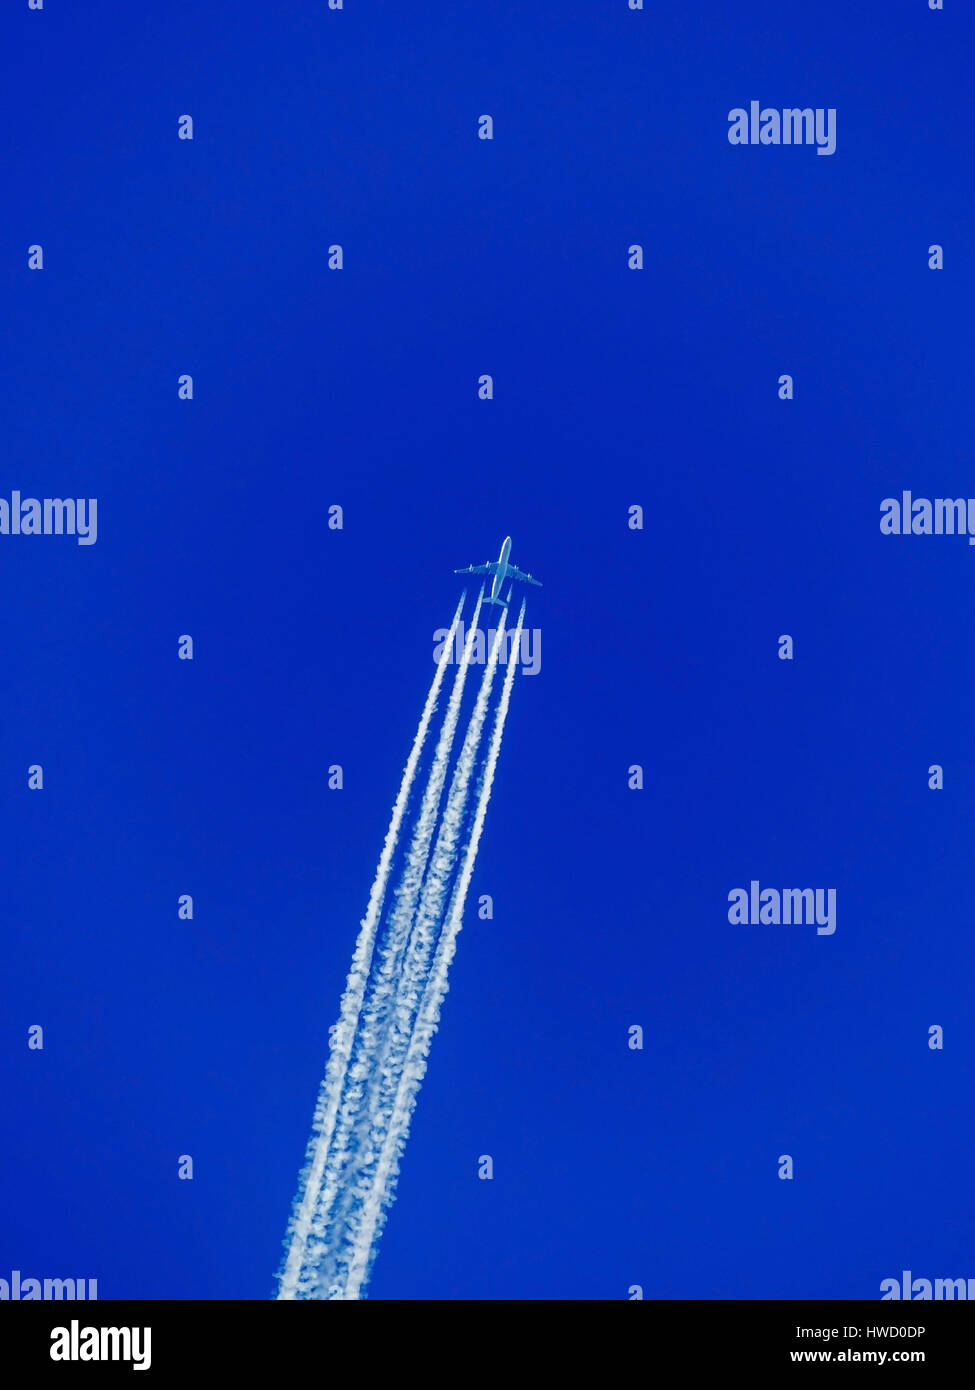 Un aereo con condensazione sentiero prima il cielo blu. Il volo in vacanza, Ein Flugzeug mit Kondensstreifen vor dem blauen Himmel. In Flugreise Foto Stock